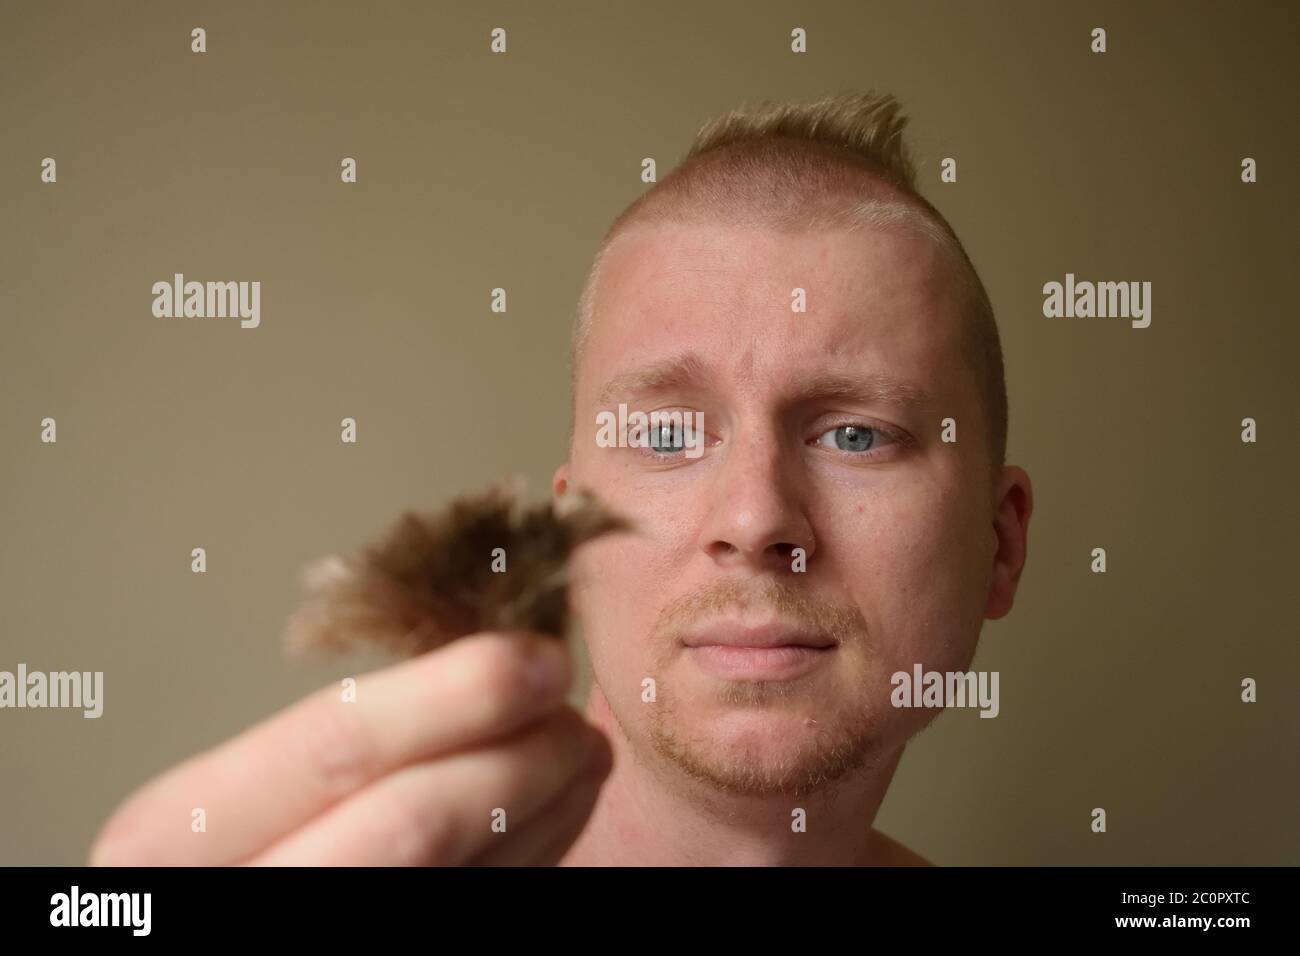 El joven mira lamentablemente a un candado de su pelo después de darse un mal corte de pelo en casa durante el cierre Foto de stock